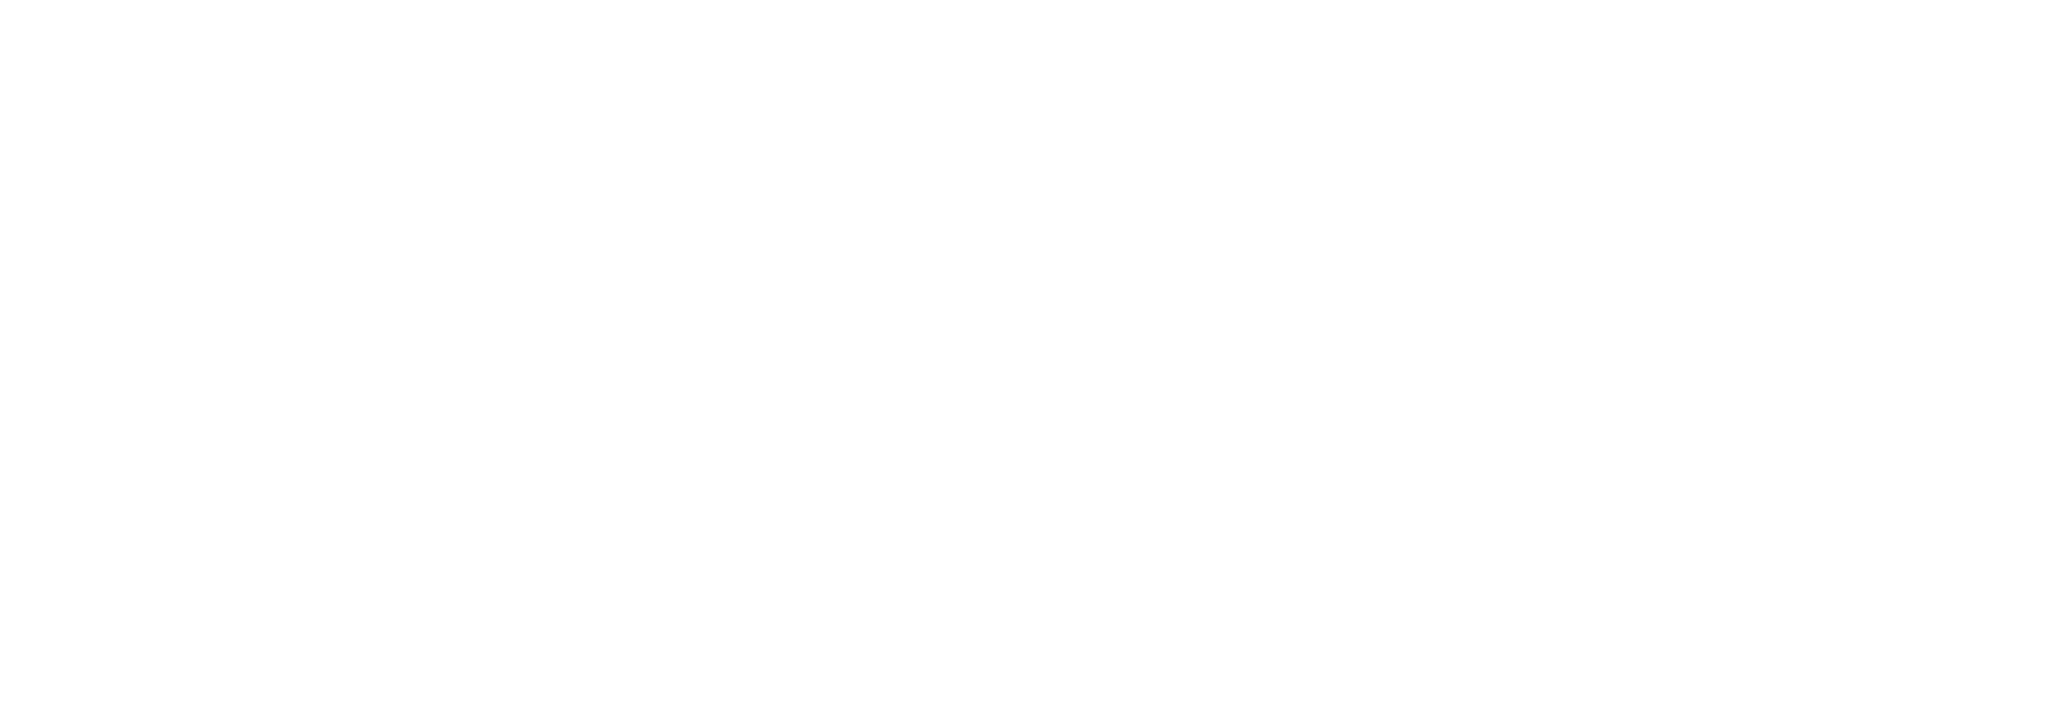 Eventagentur Hamburg Logo weiß auf transparent Homepage